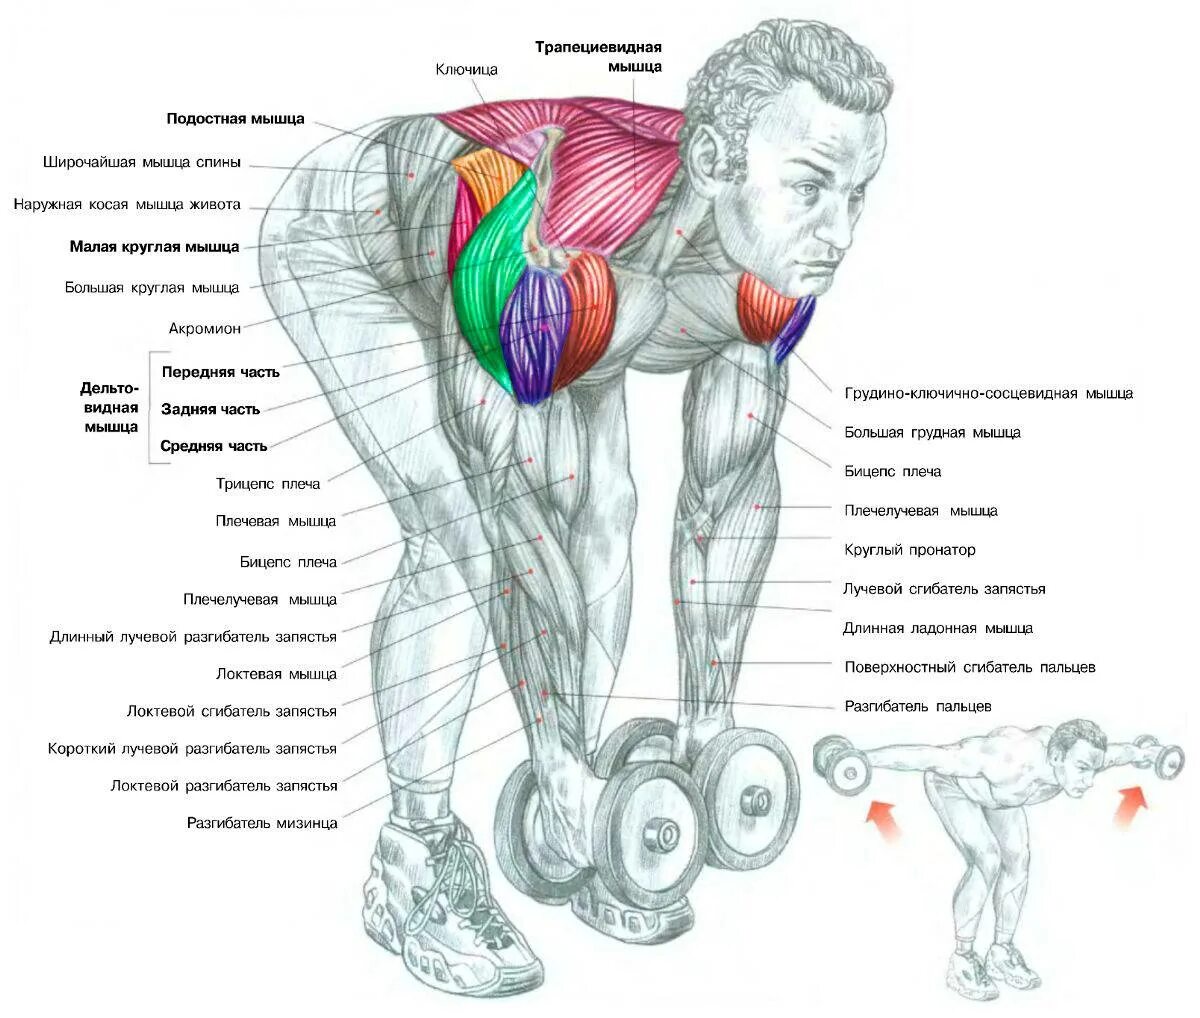 Задний пучок дельтовидной мышцы упражнения. Тренировка дельтовидных мышц гантелями. Упражнения на дельтовидные мышцы с гантелями. Разведение гантель на заднюю дельту.